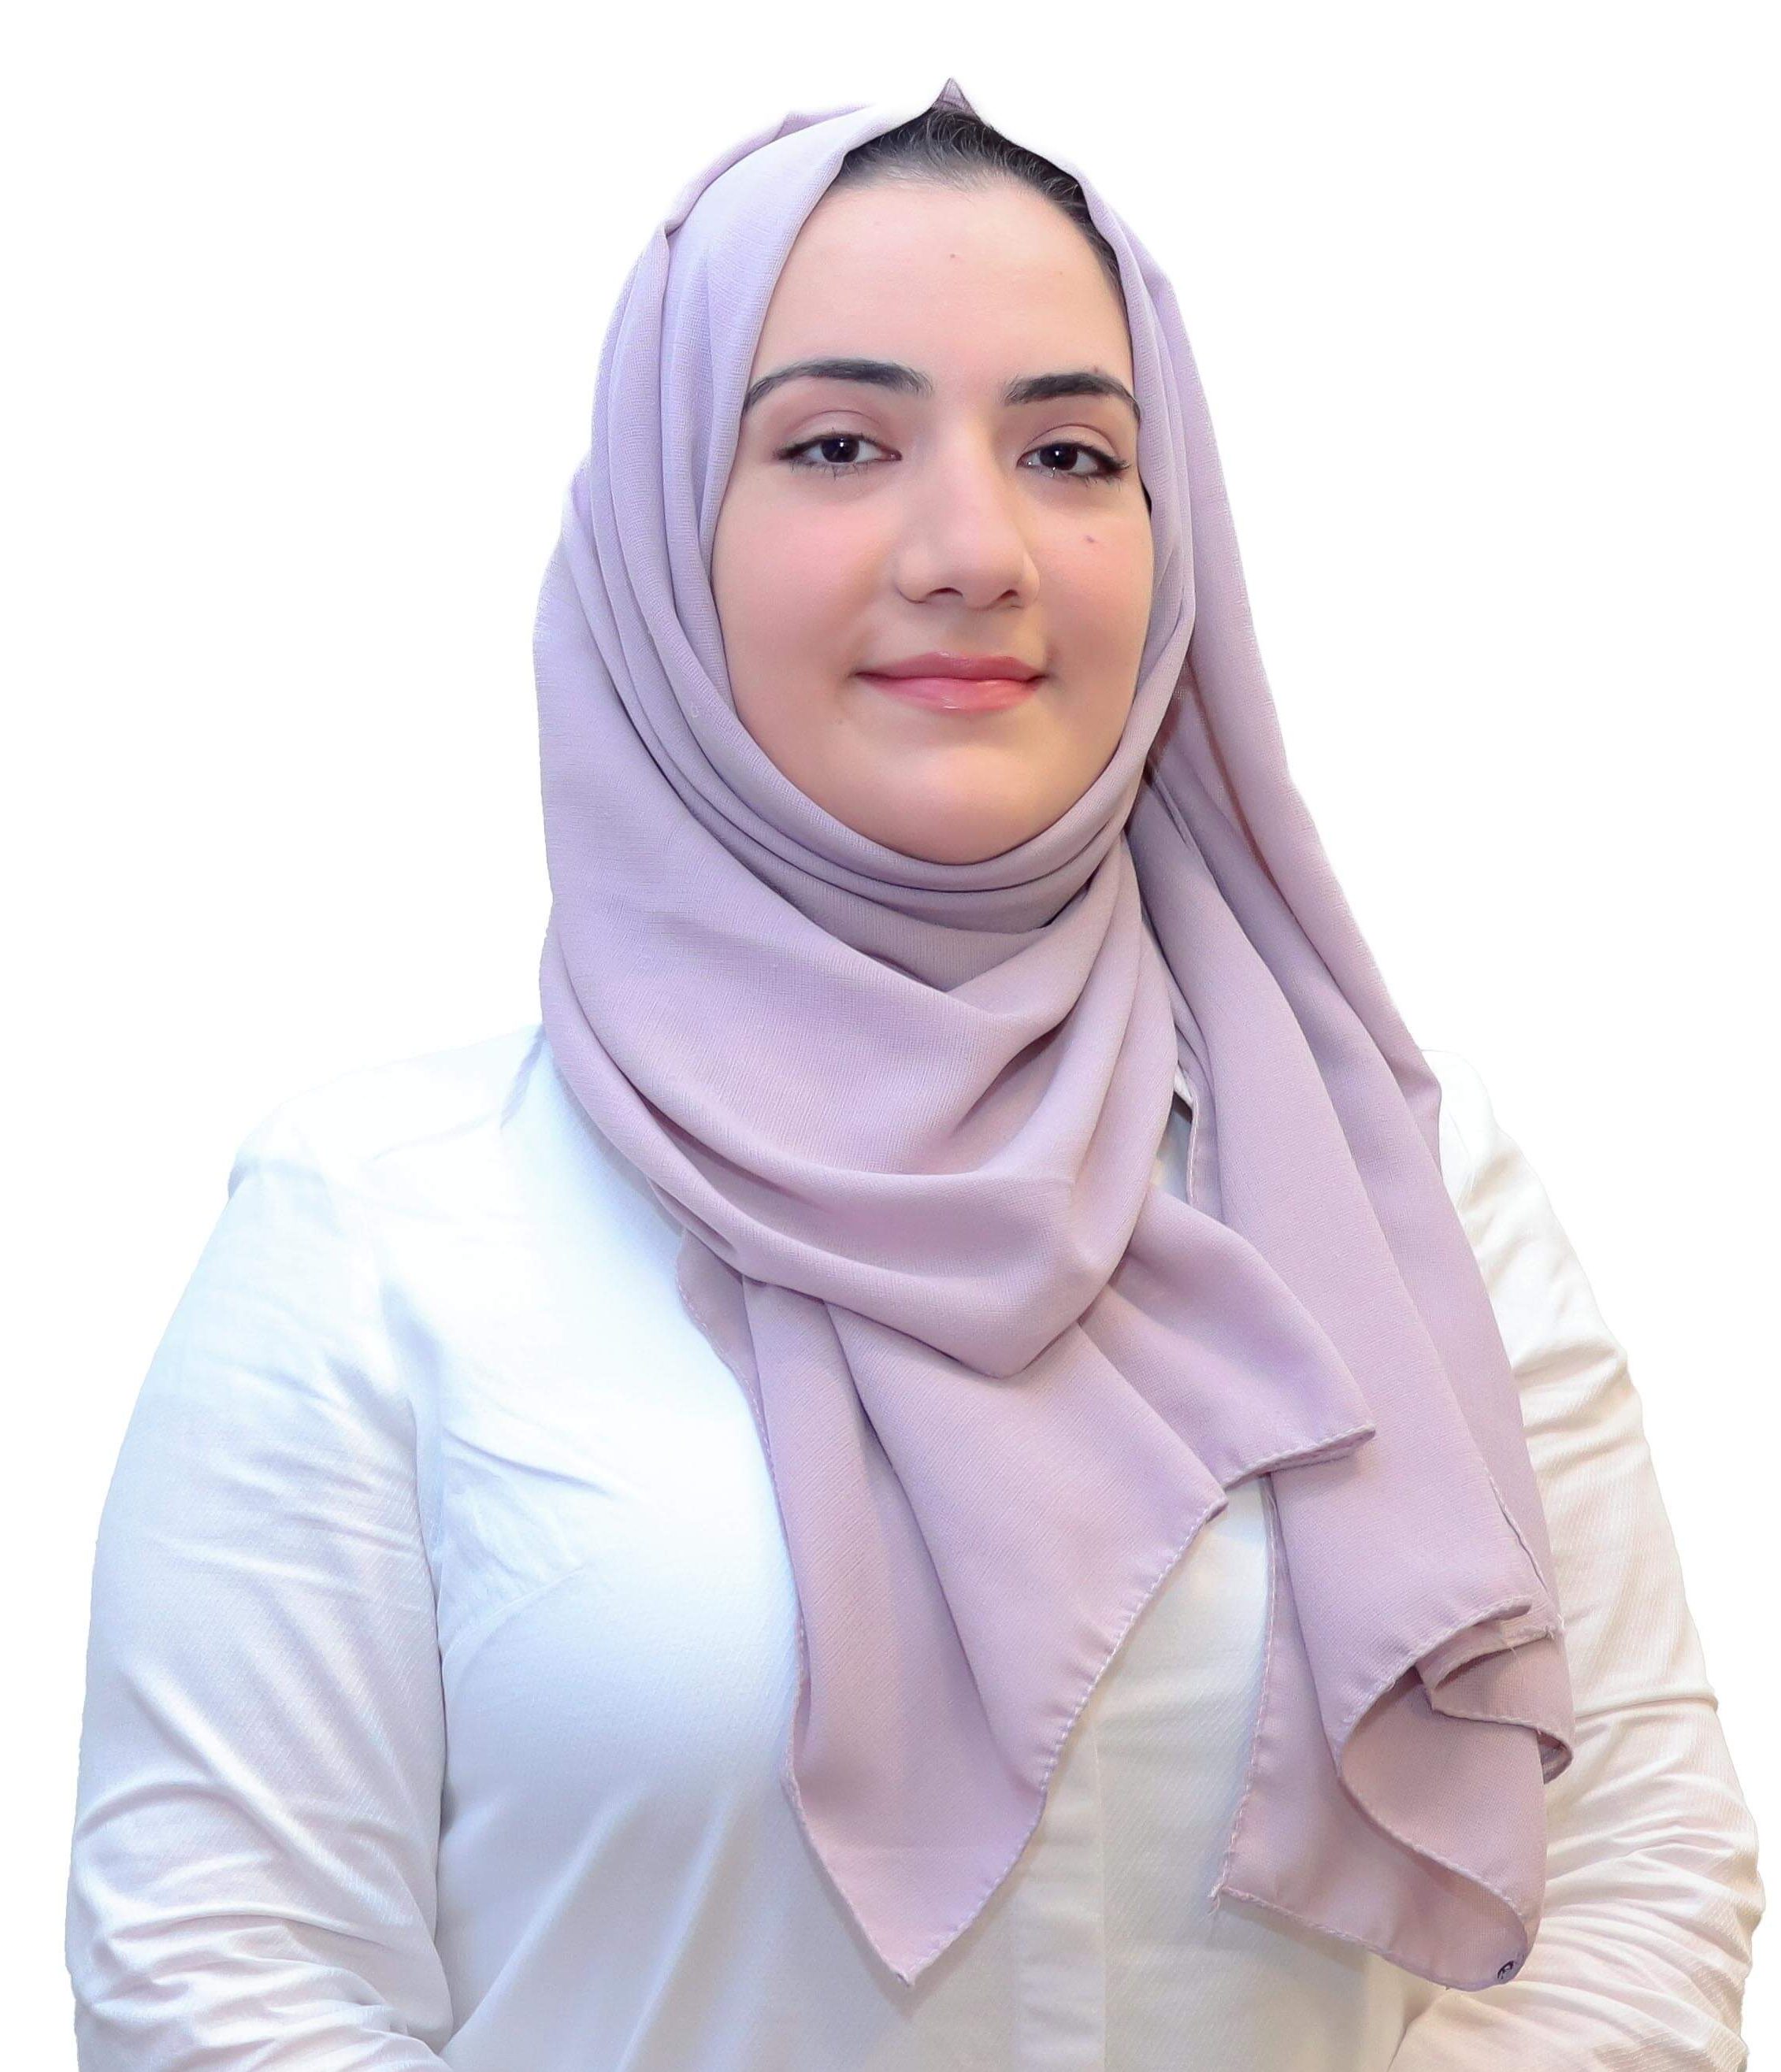 Dr. Sara Sultan